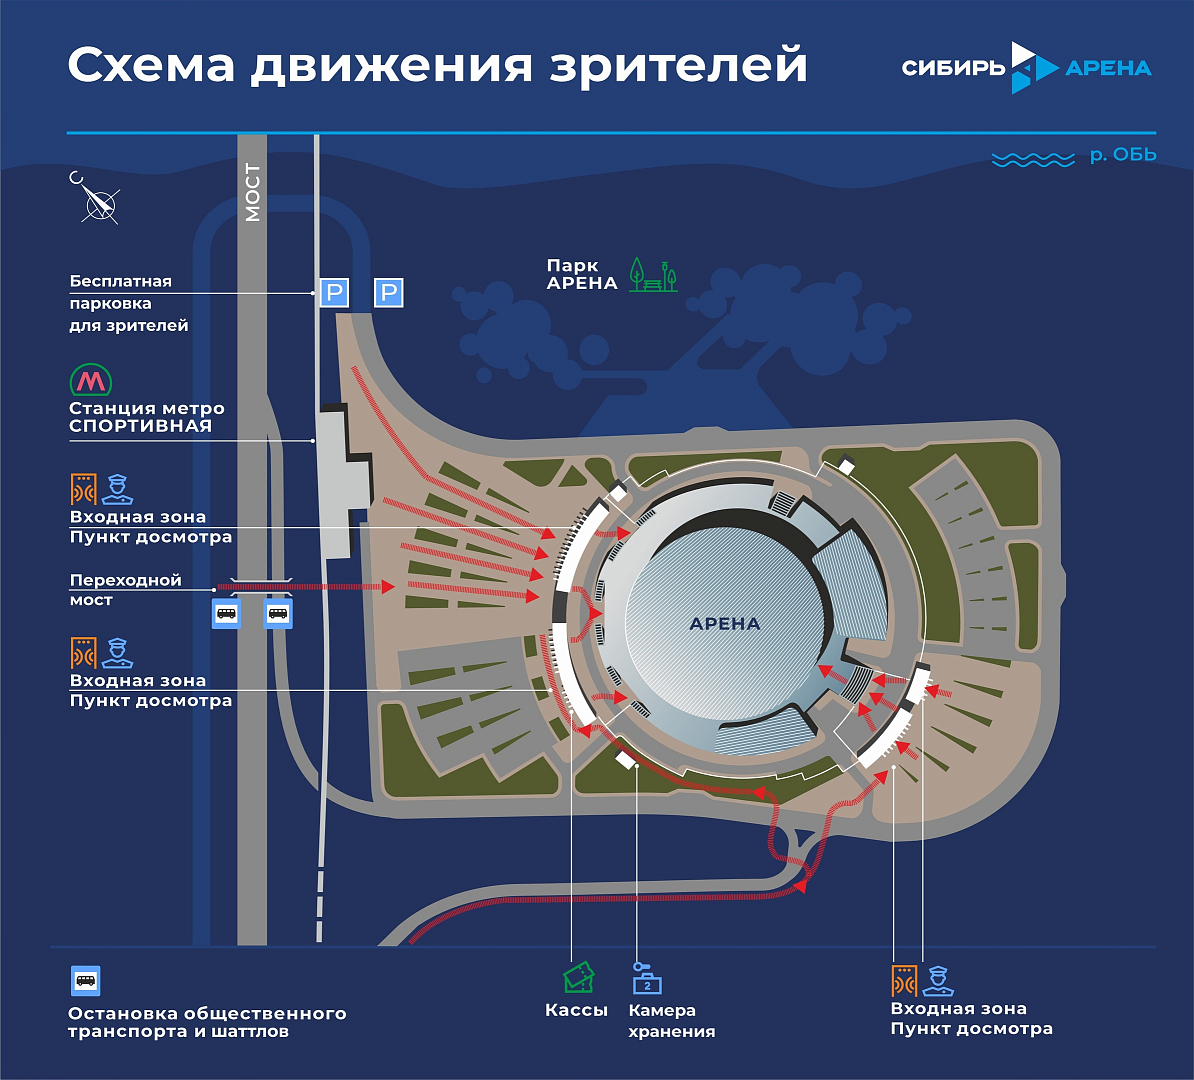 Организация работы общественного транспорта в дни матчей «Сибири»